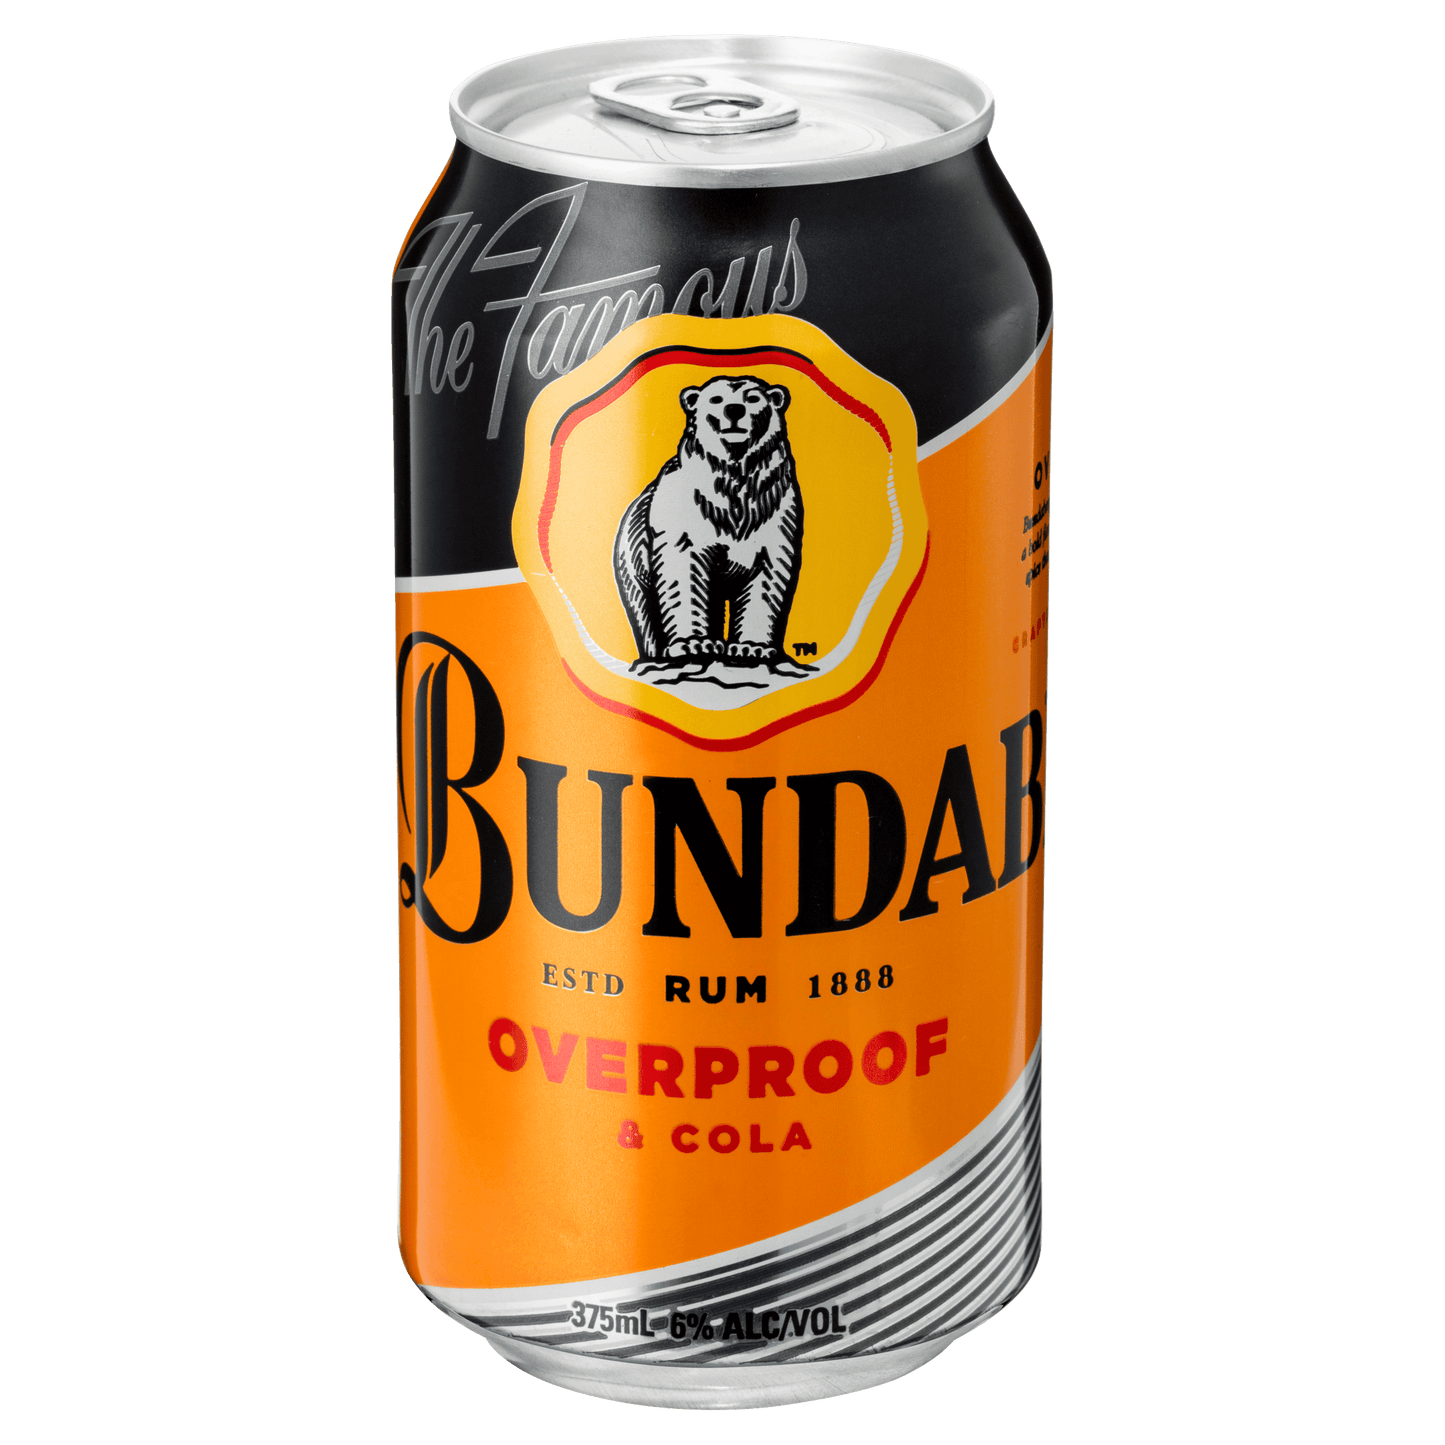 Bundaberg OP & Cola